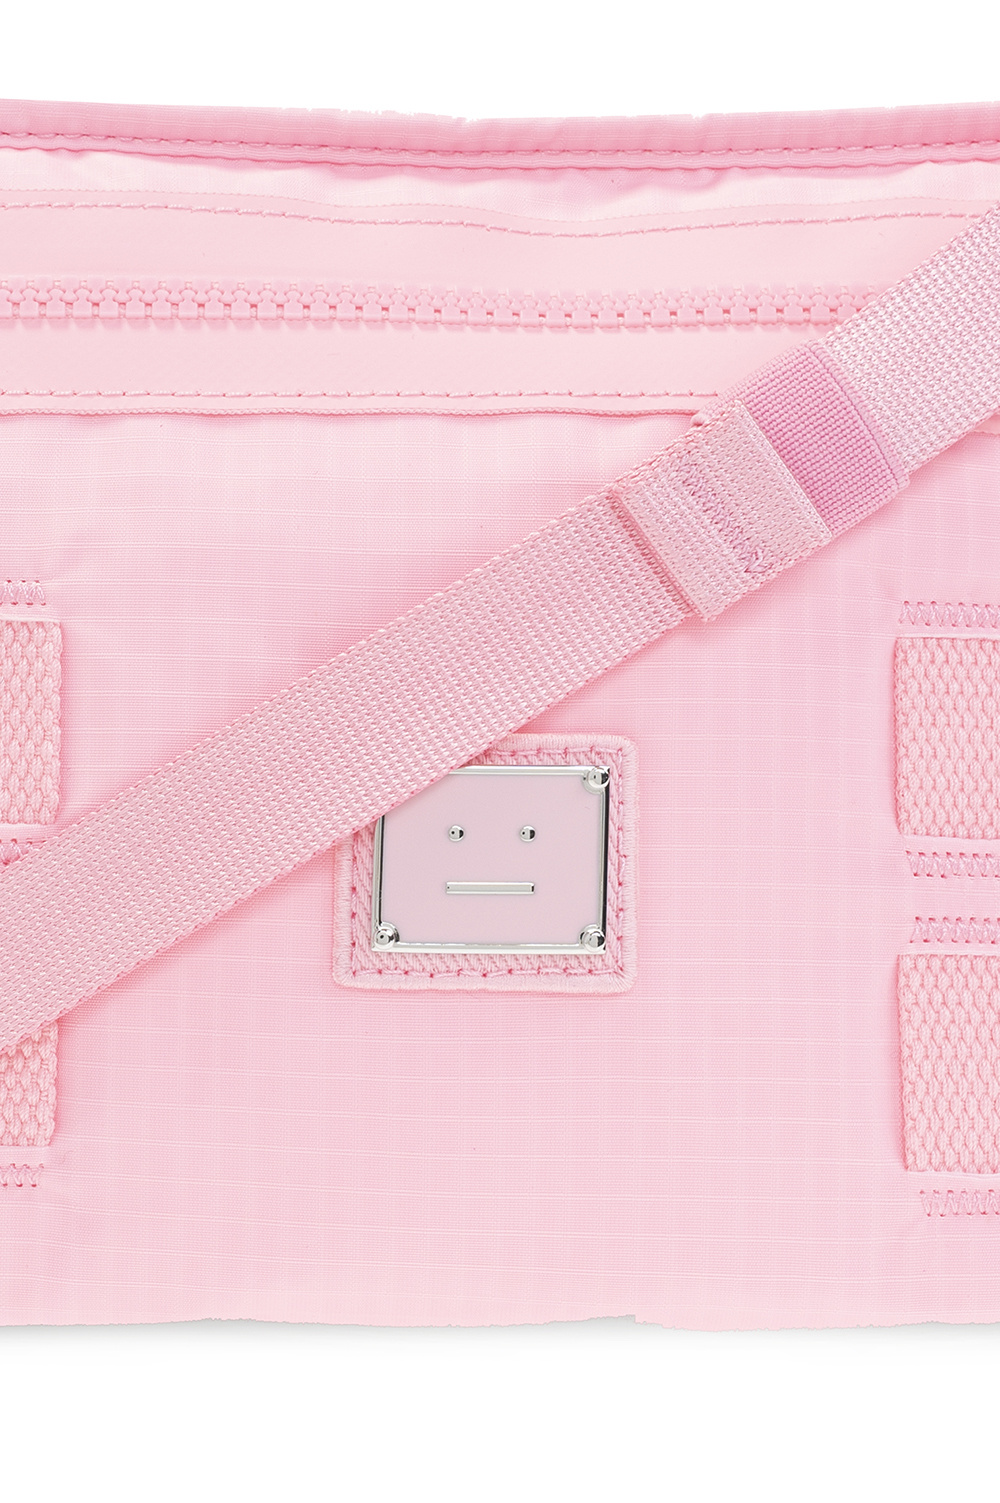 Acne Studios – Logo Shoulder Tote Bag Pink - One Size